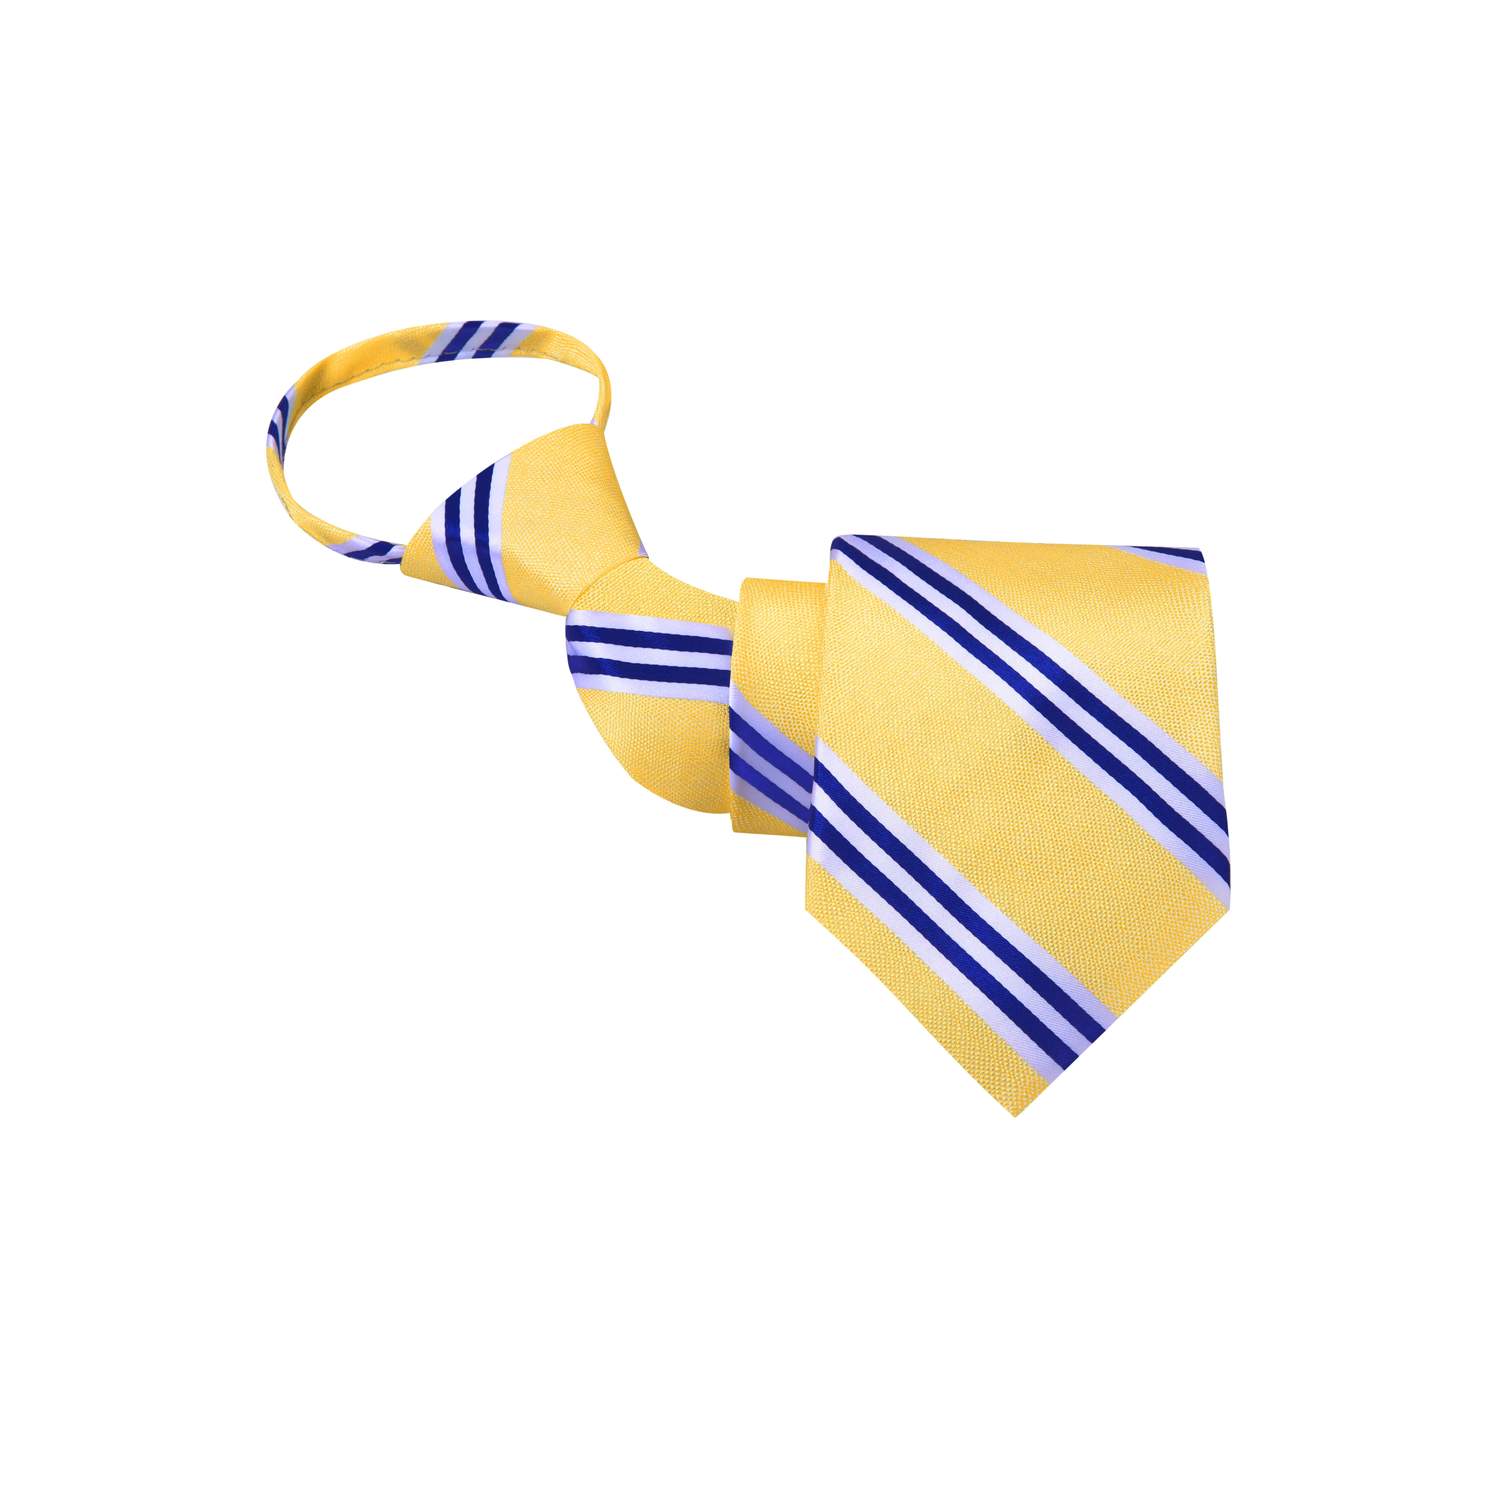 Zipper Tie View: A Light Yellow with White and Dark Blue Stripe Silk Zipper Necktie